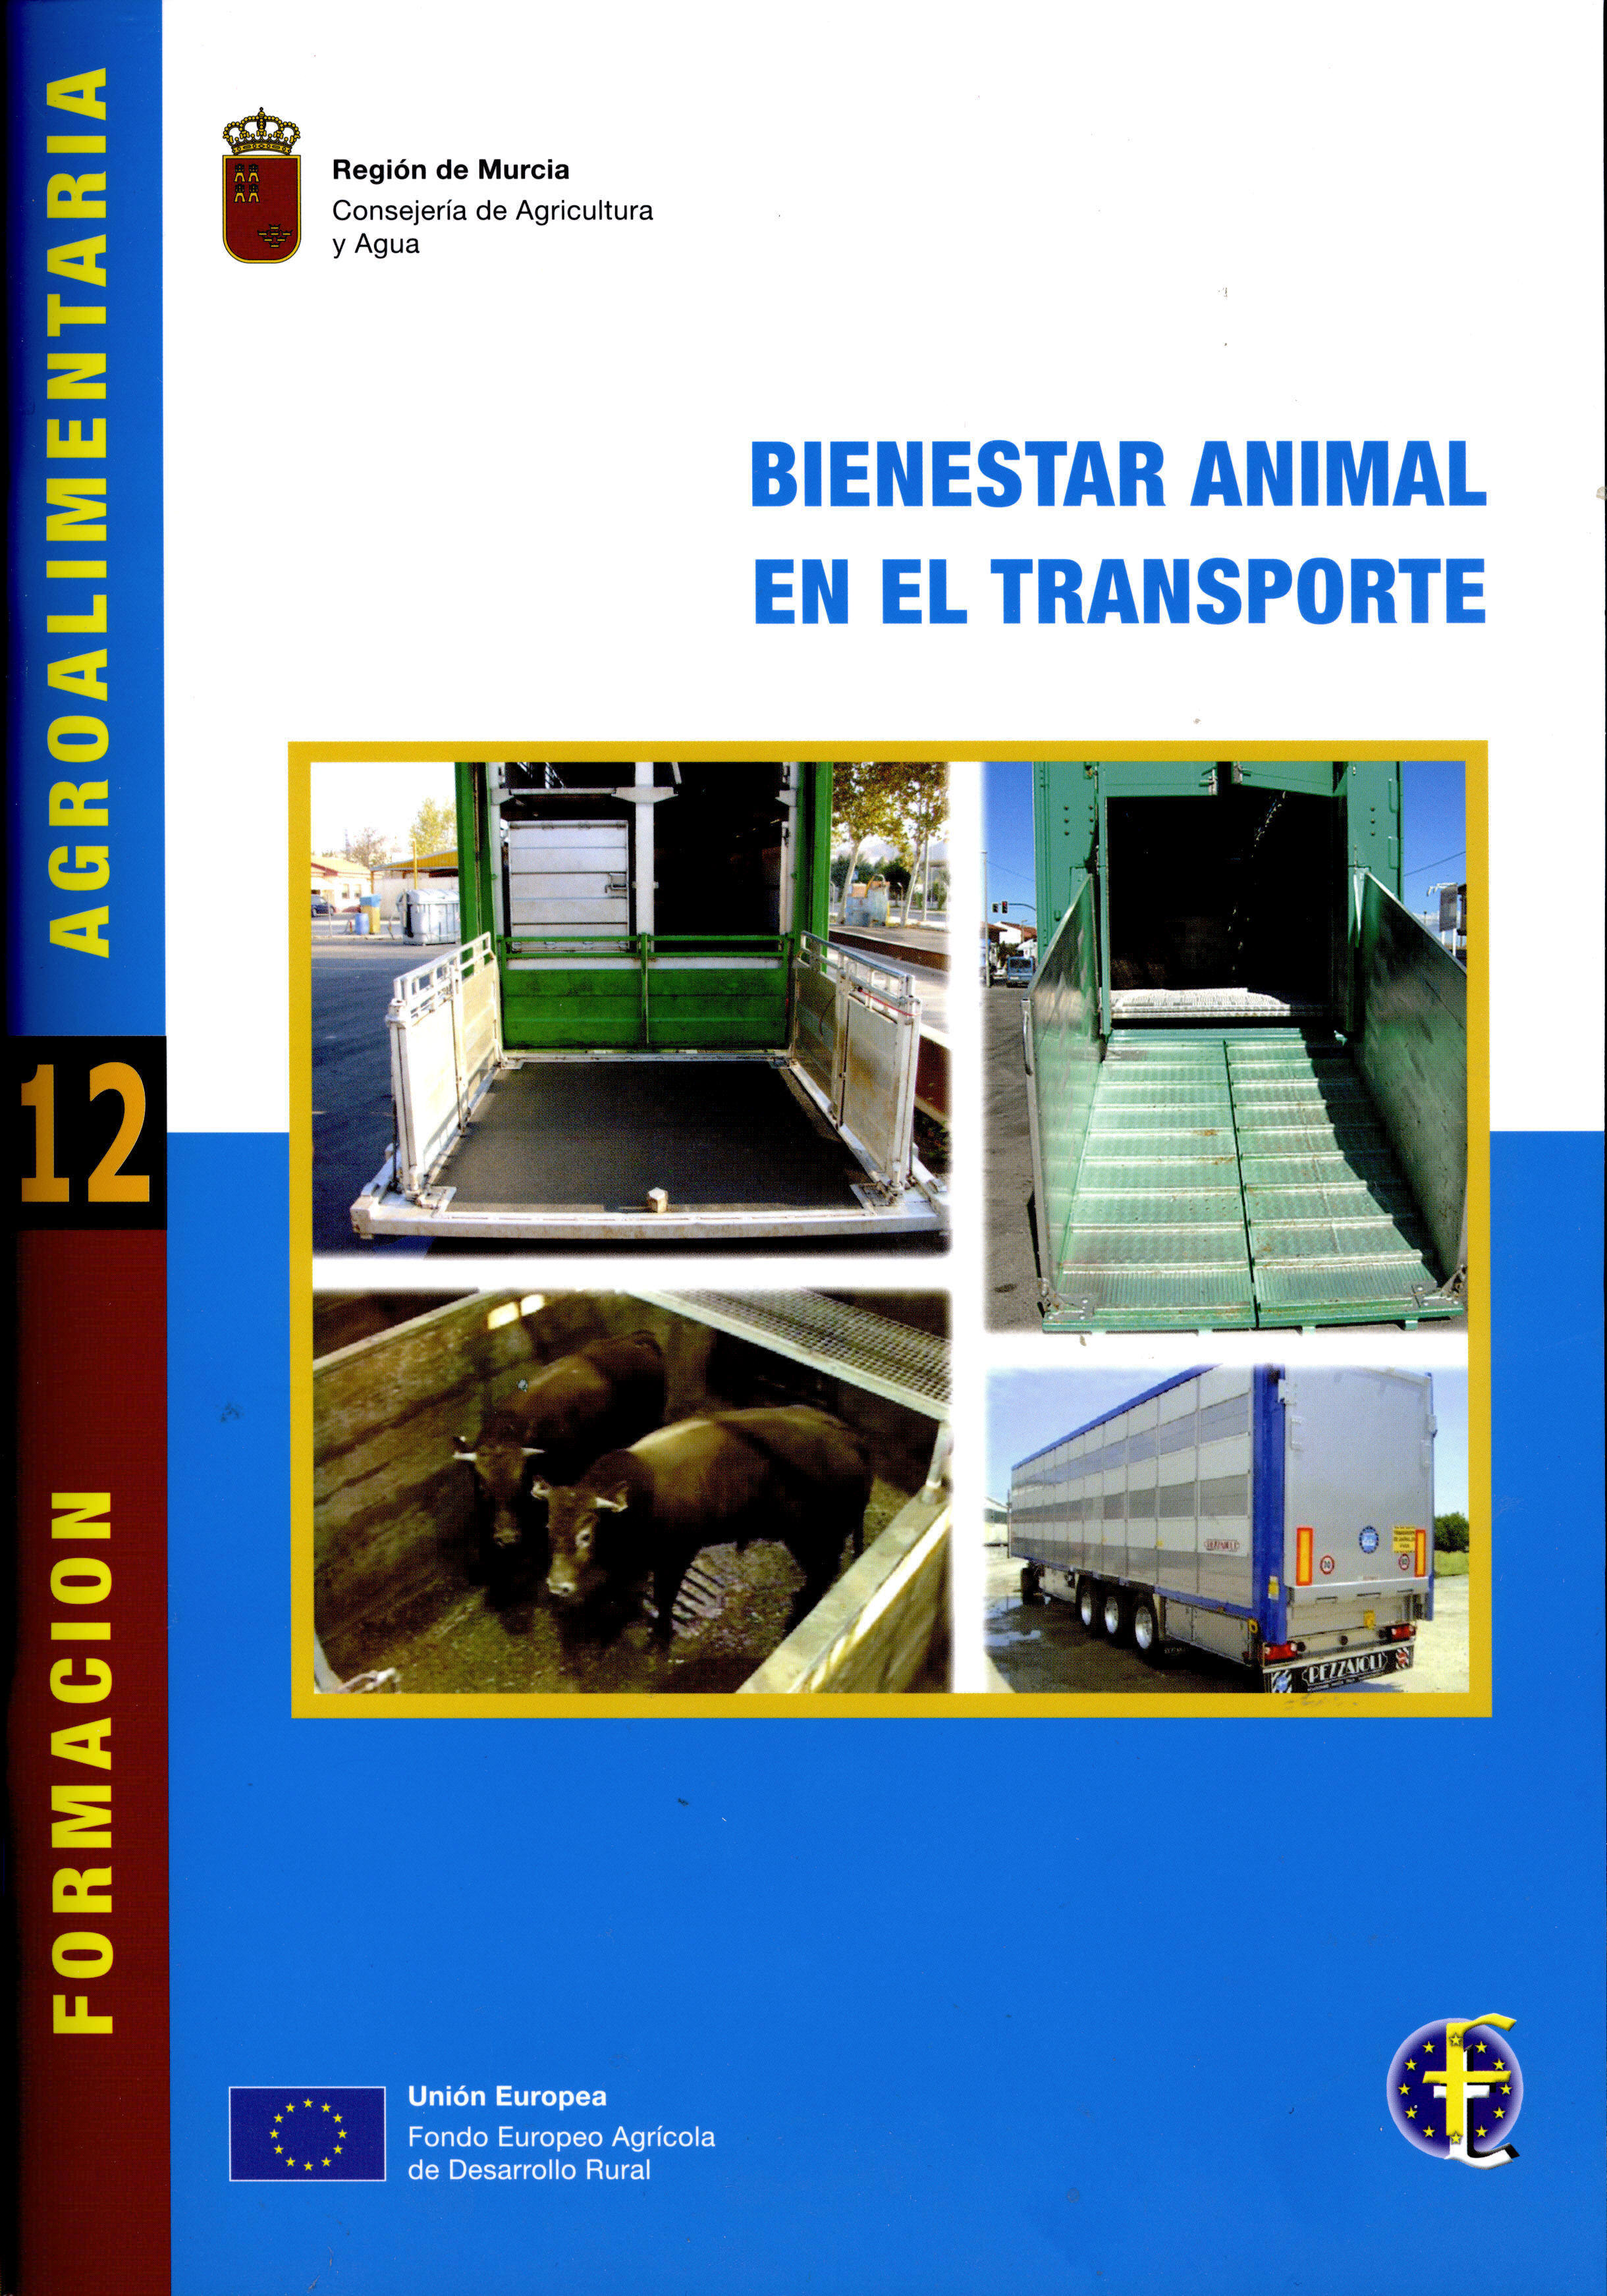 Portada de "Bienestar animal en el transporte"